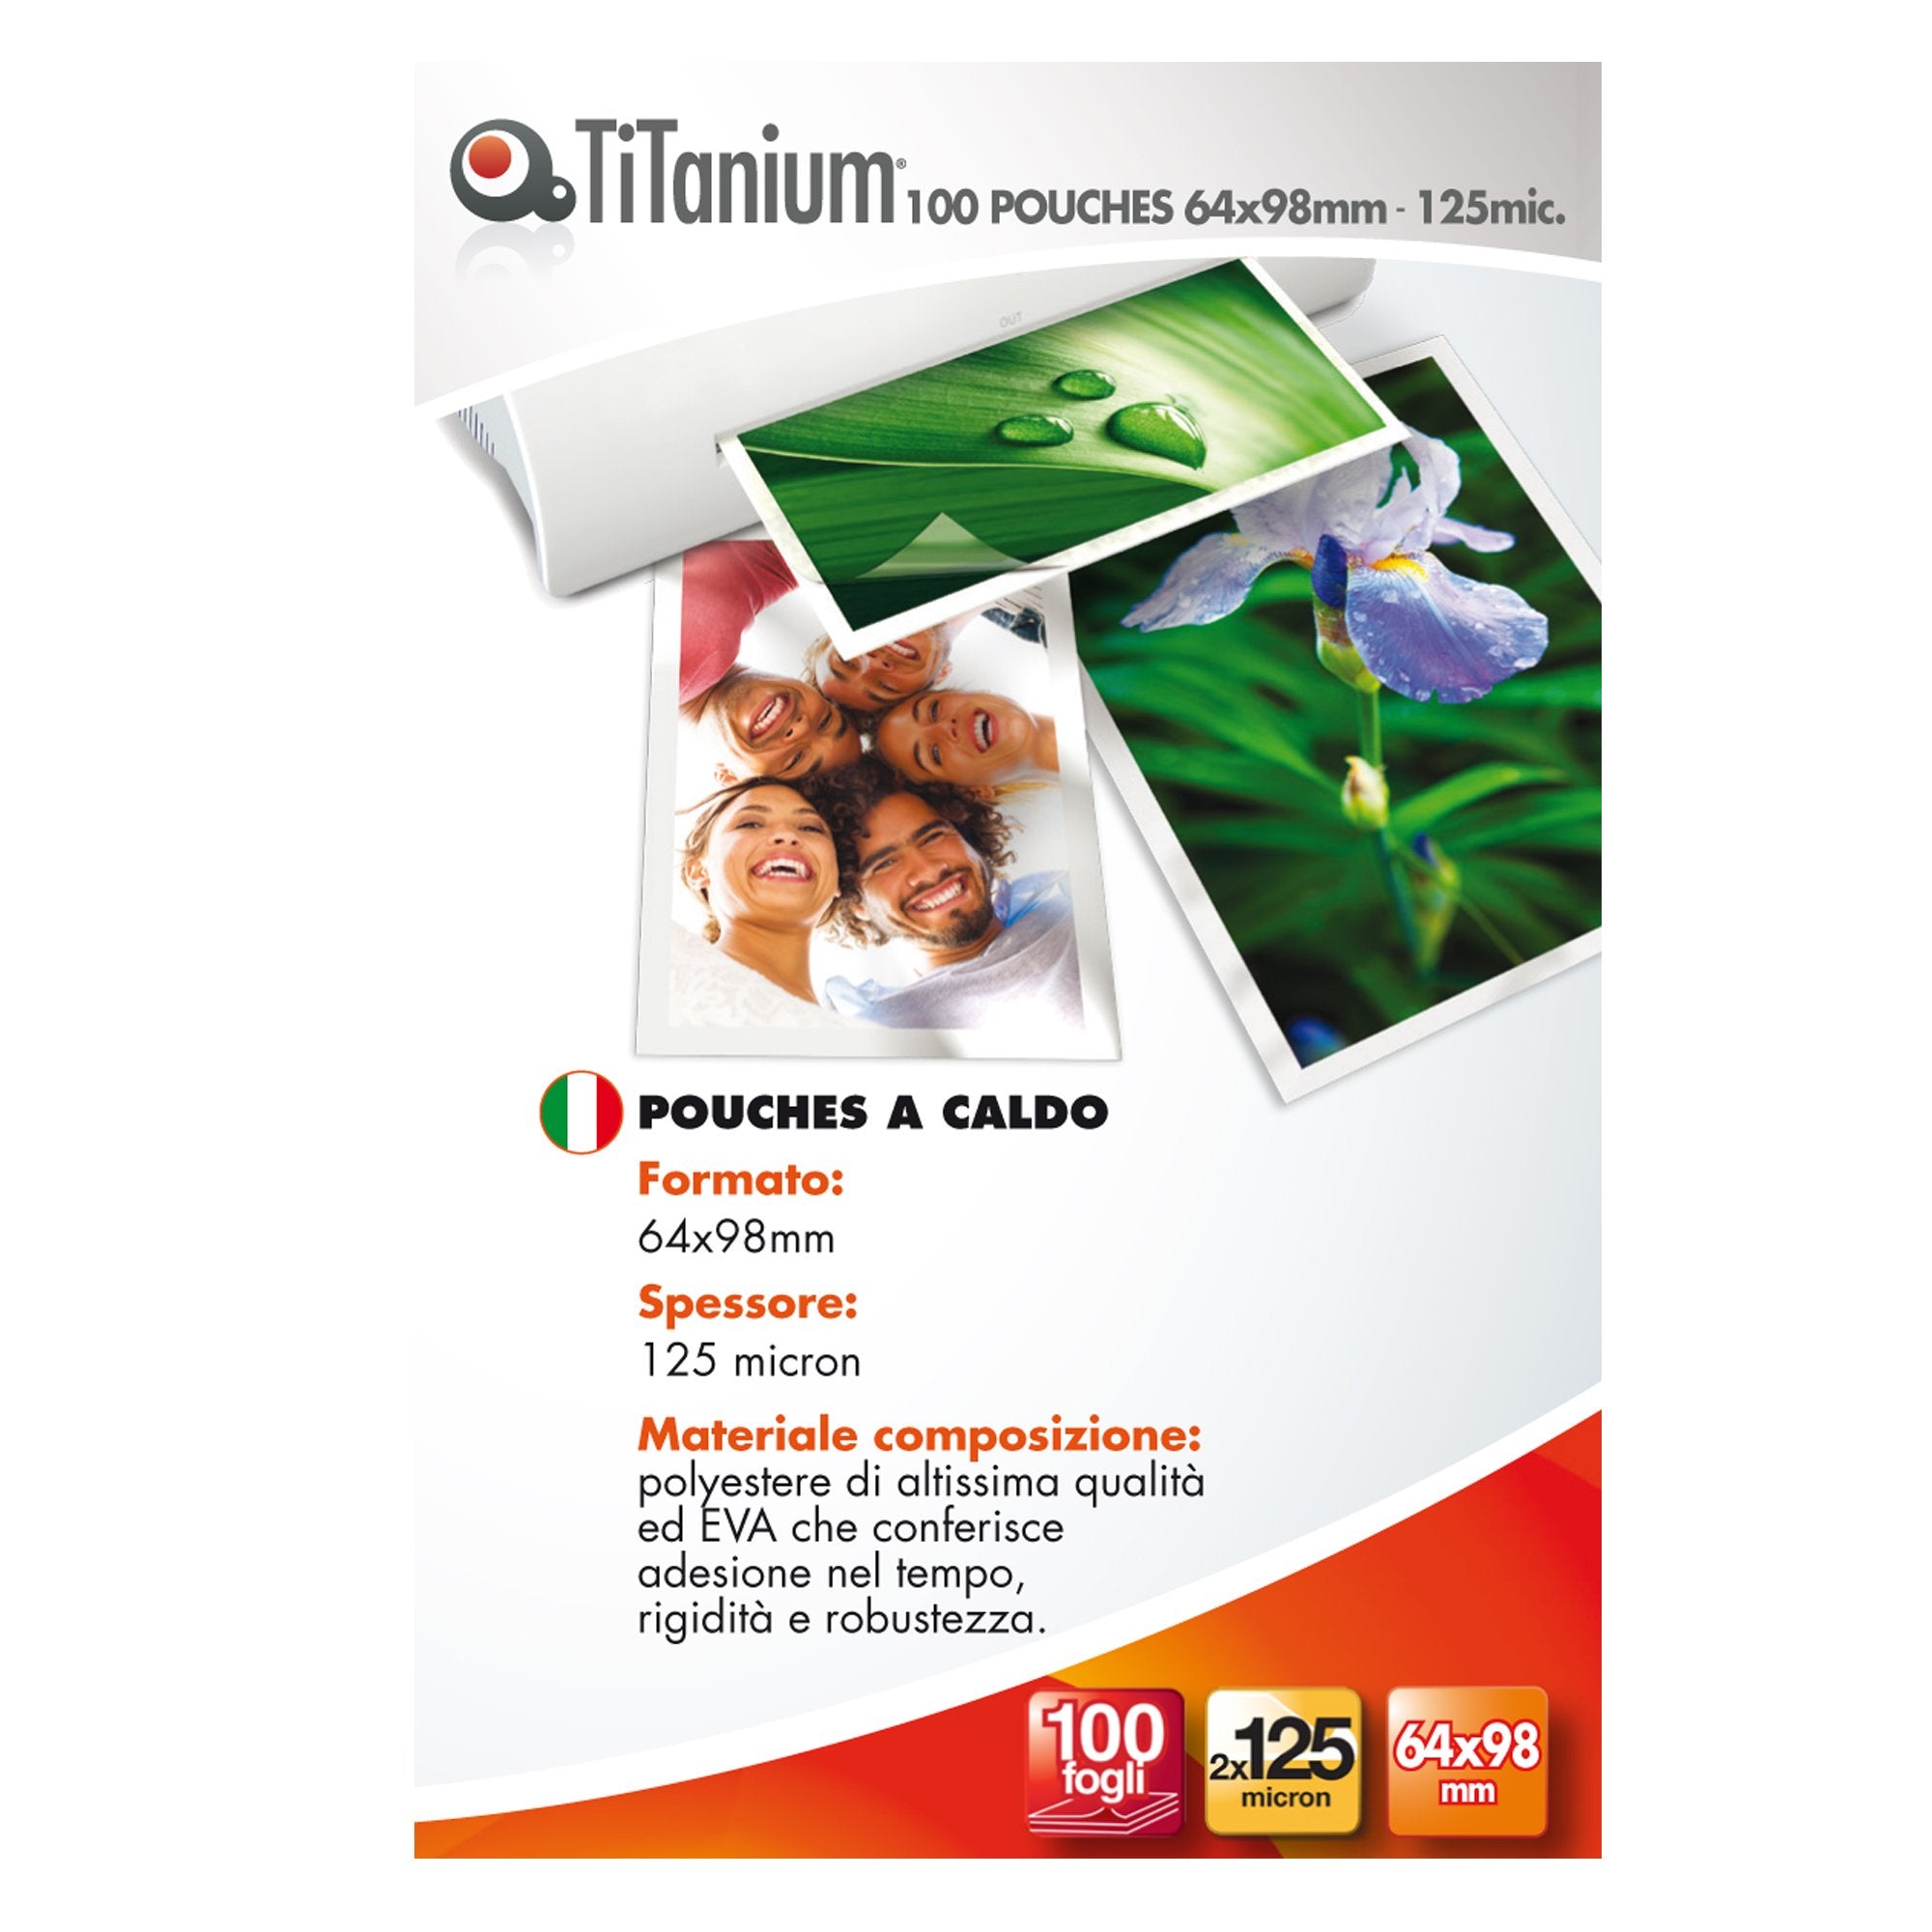 titanium-100-pouches-64x98mm-125my-key-card